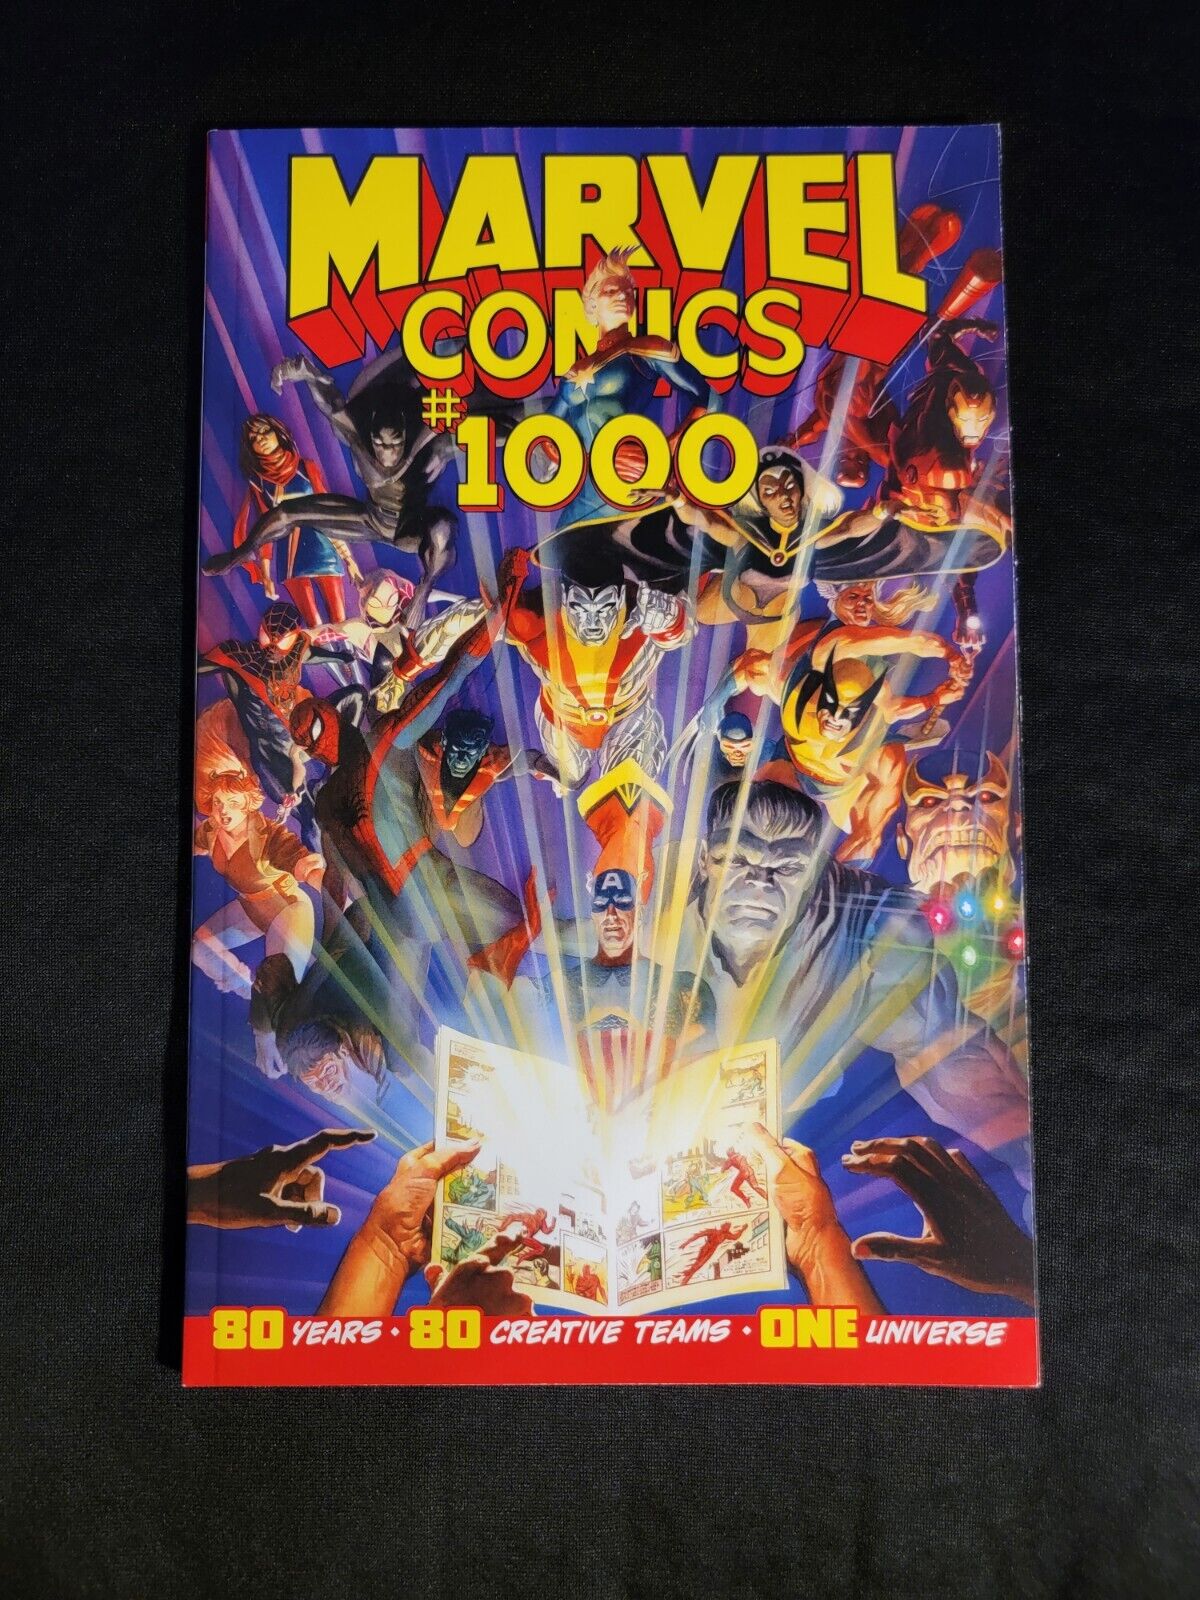 Marvel Comics #1000 (Marvel Comics)